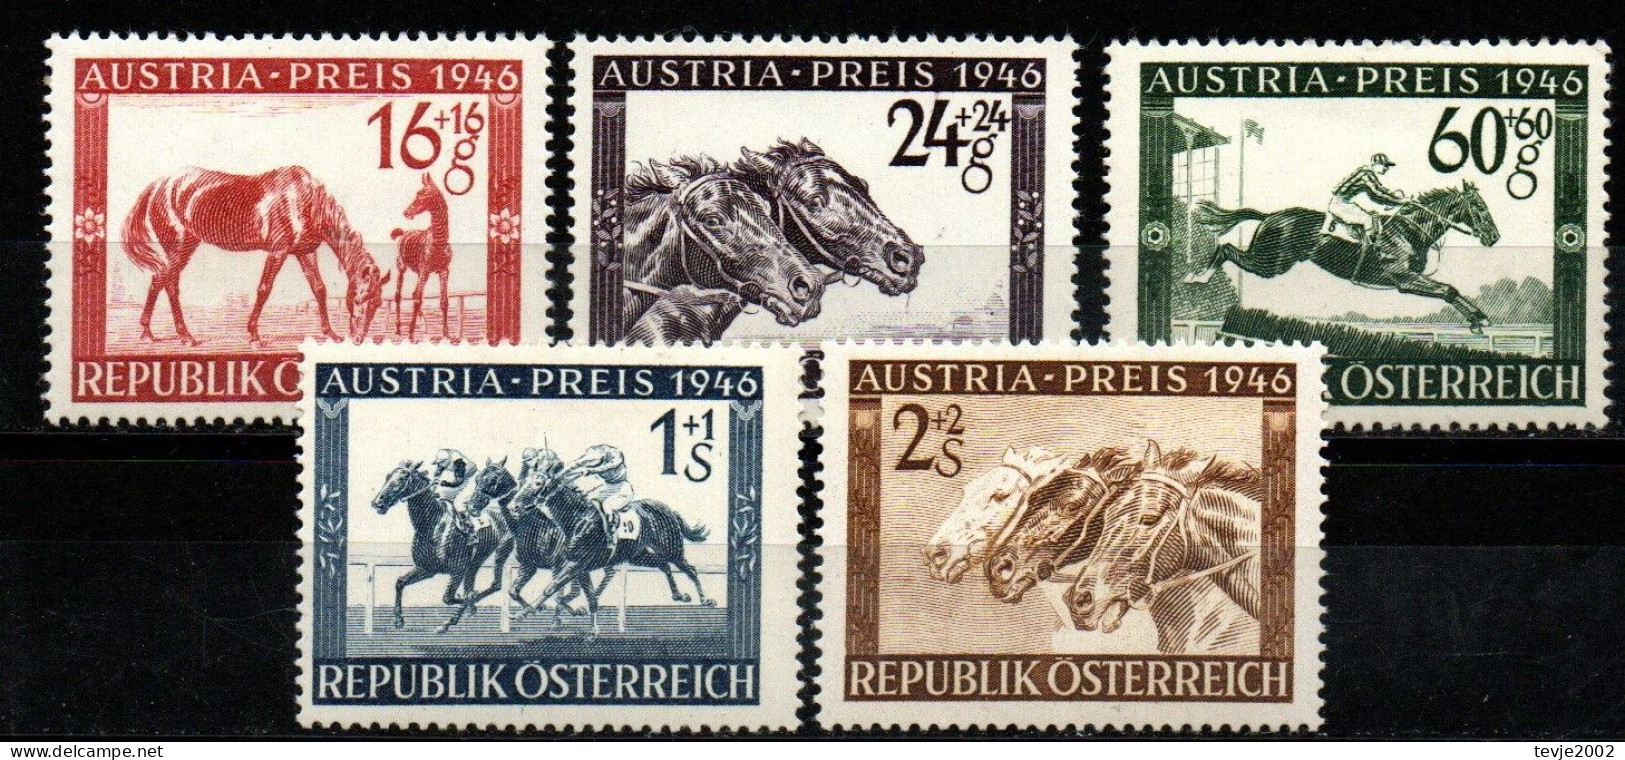 Österreich 1946 - Mi.Nr. 785 - 789 - Postfrisch MNH - Tiere Animals Pferde Horses Sport Reiten Riding - Hippisme